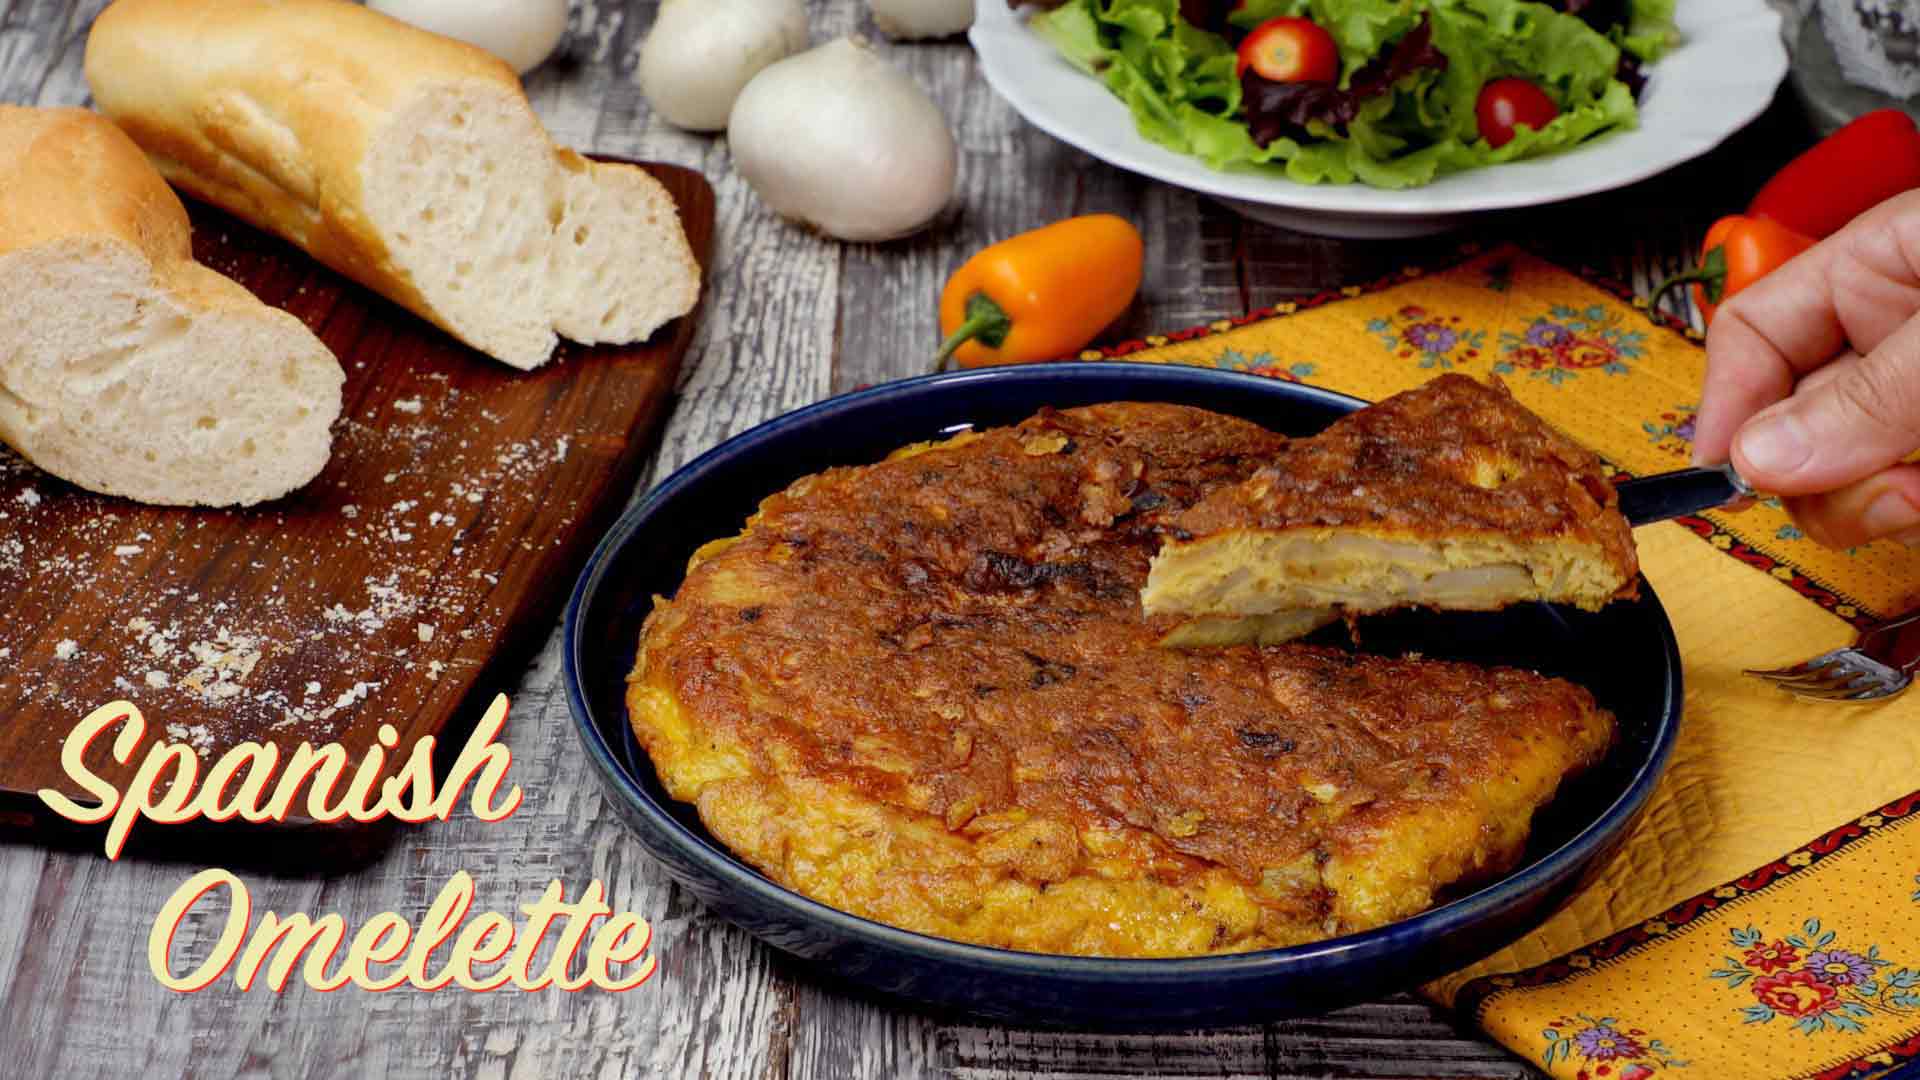 Easy Spanish Omelette | Breakfast and Snack Recipe | Tortilla de Patatas